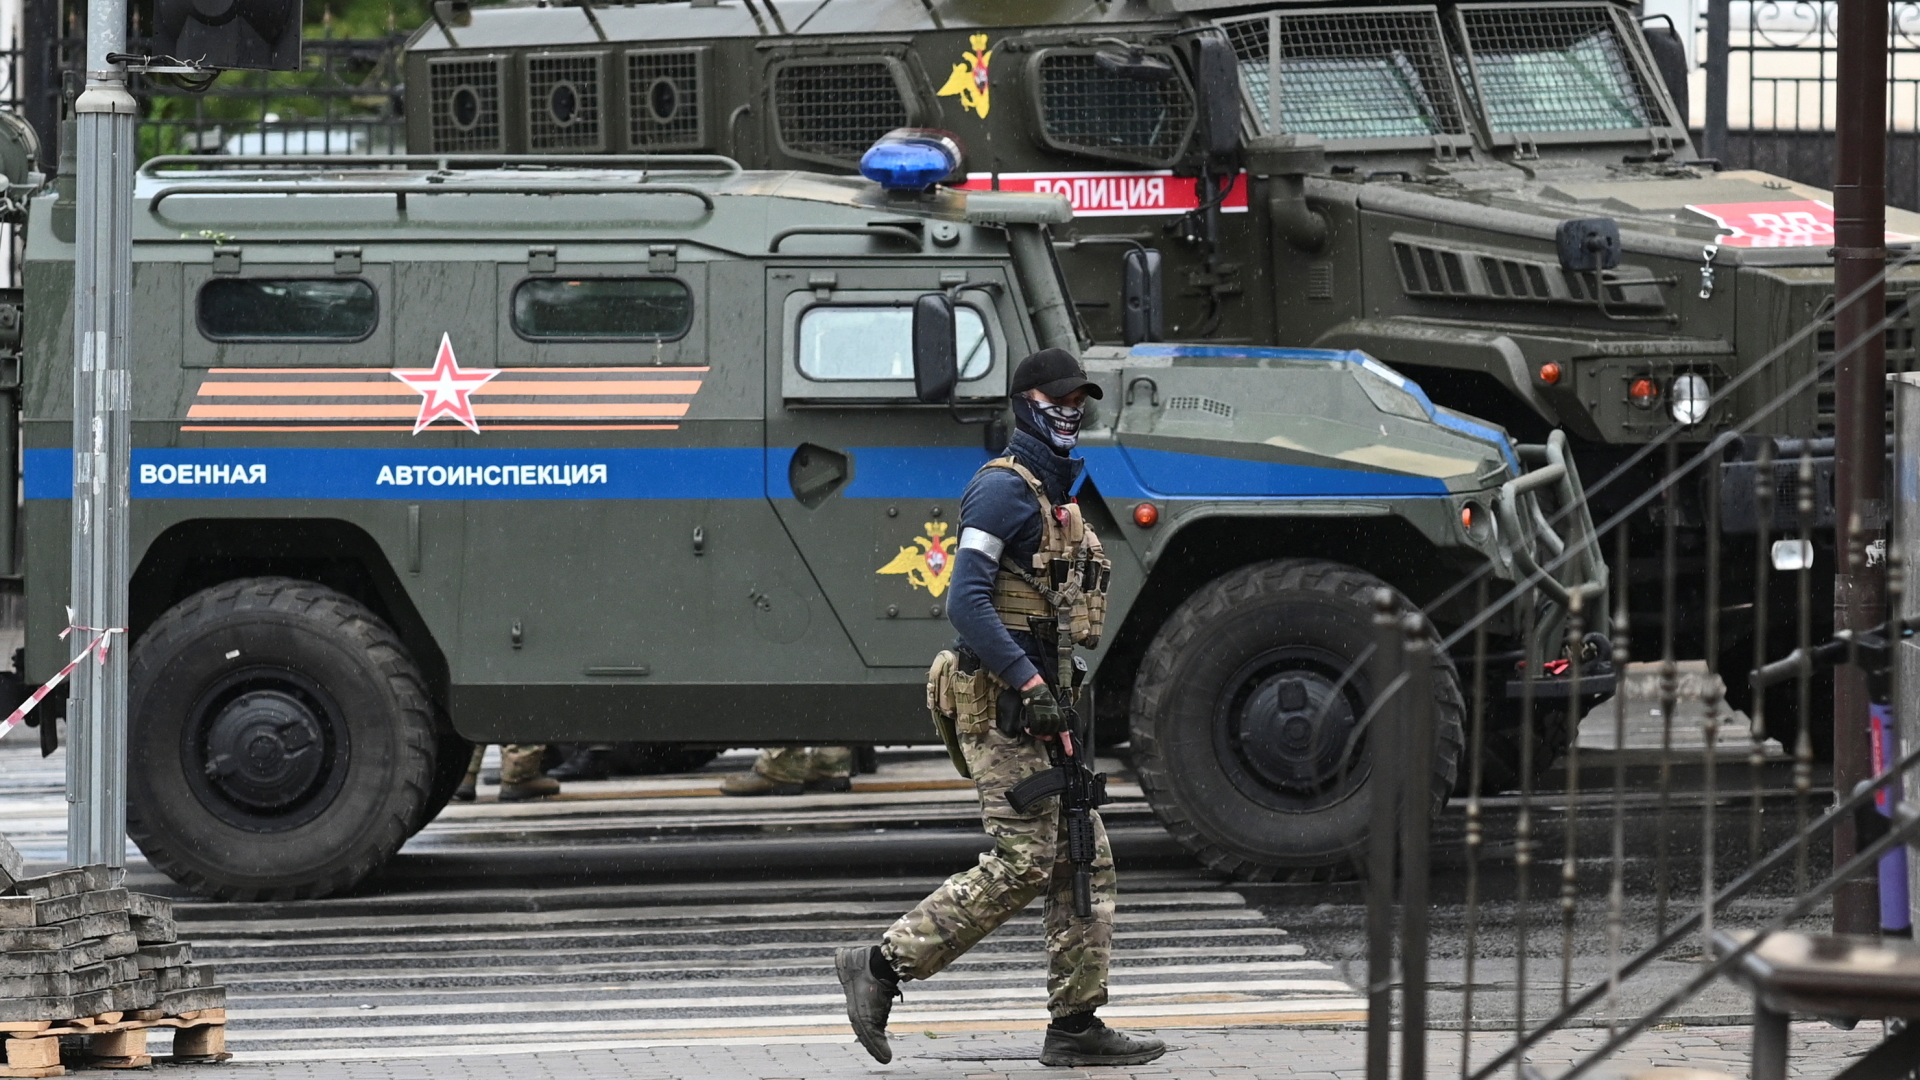 Das Bild soll laut der Nachrichtenagentur Reuters ein Mitglied der Wagner-Truppe zeigen, dass vermummt und mit Maschinengewehr an Militärfahrzeugen in der Stadt Rostow vorbeiläuft.